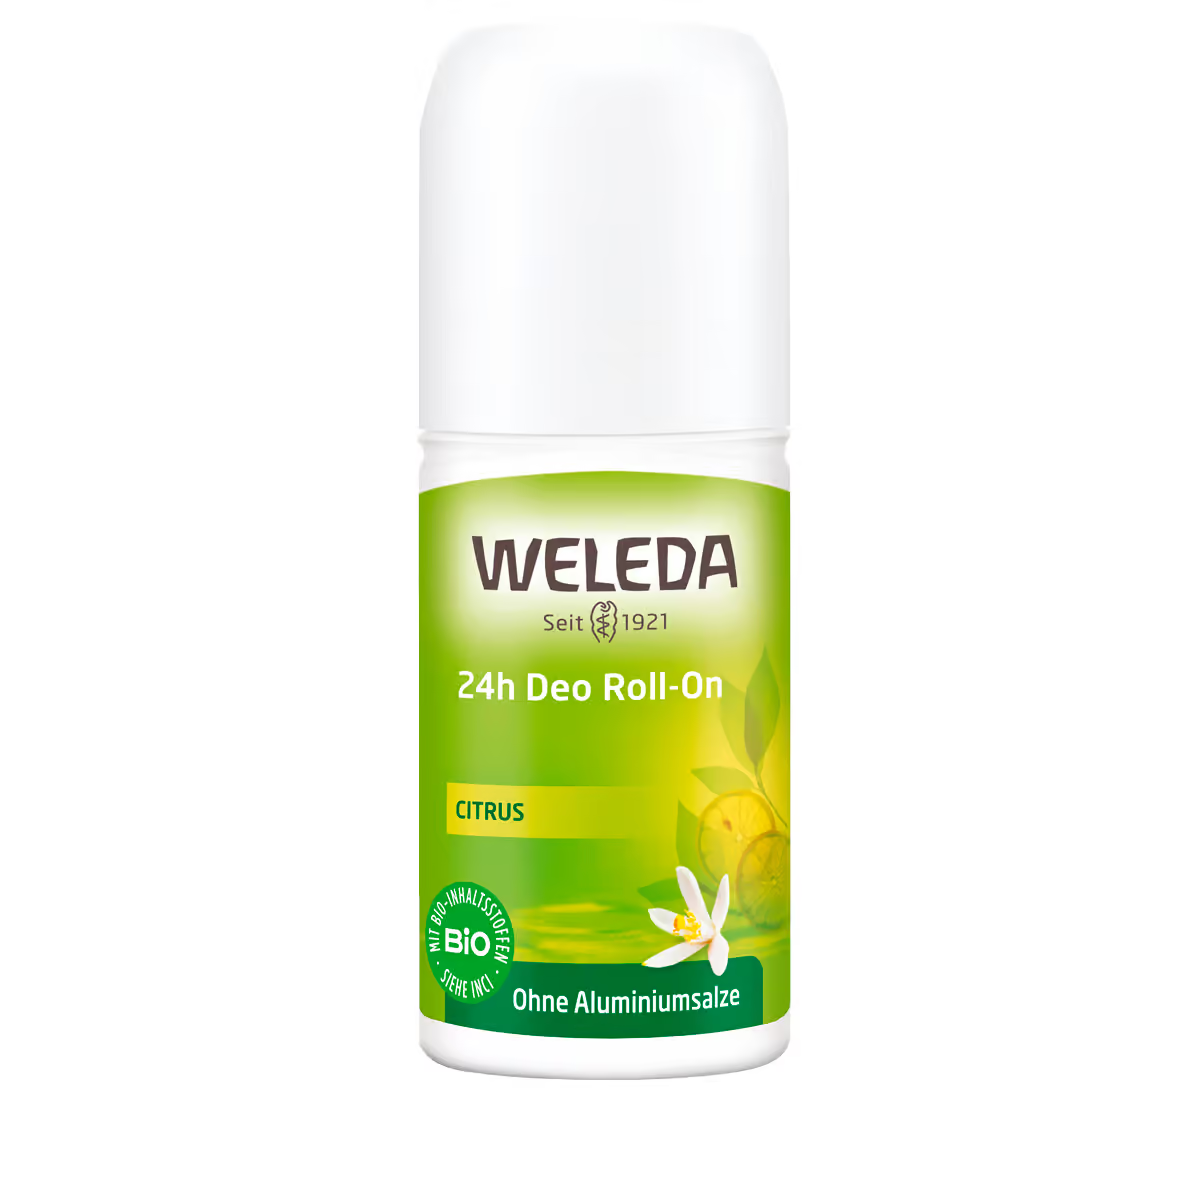 Weleda - Deo Roll-On 24h For Men von Weleda